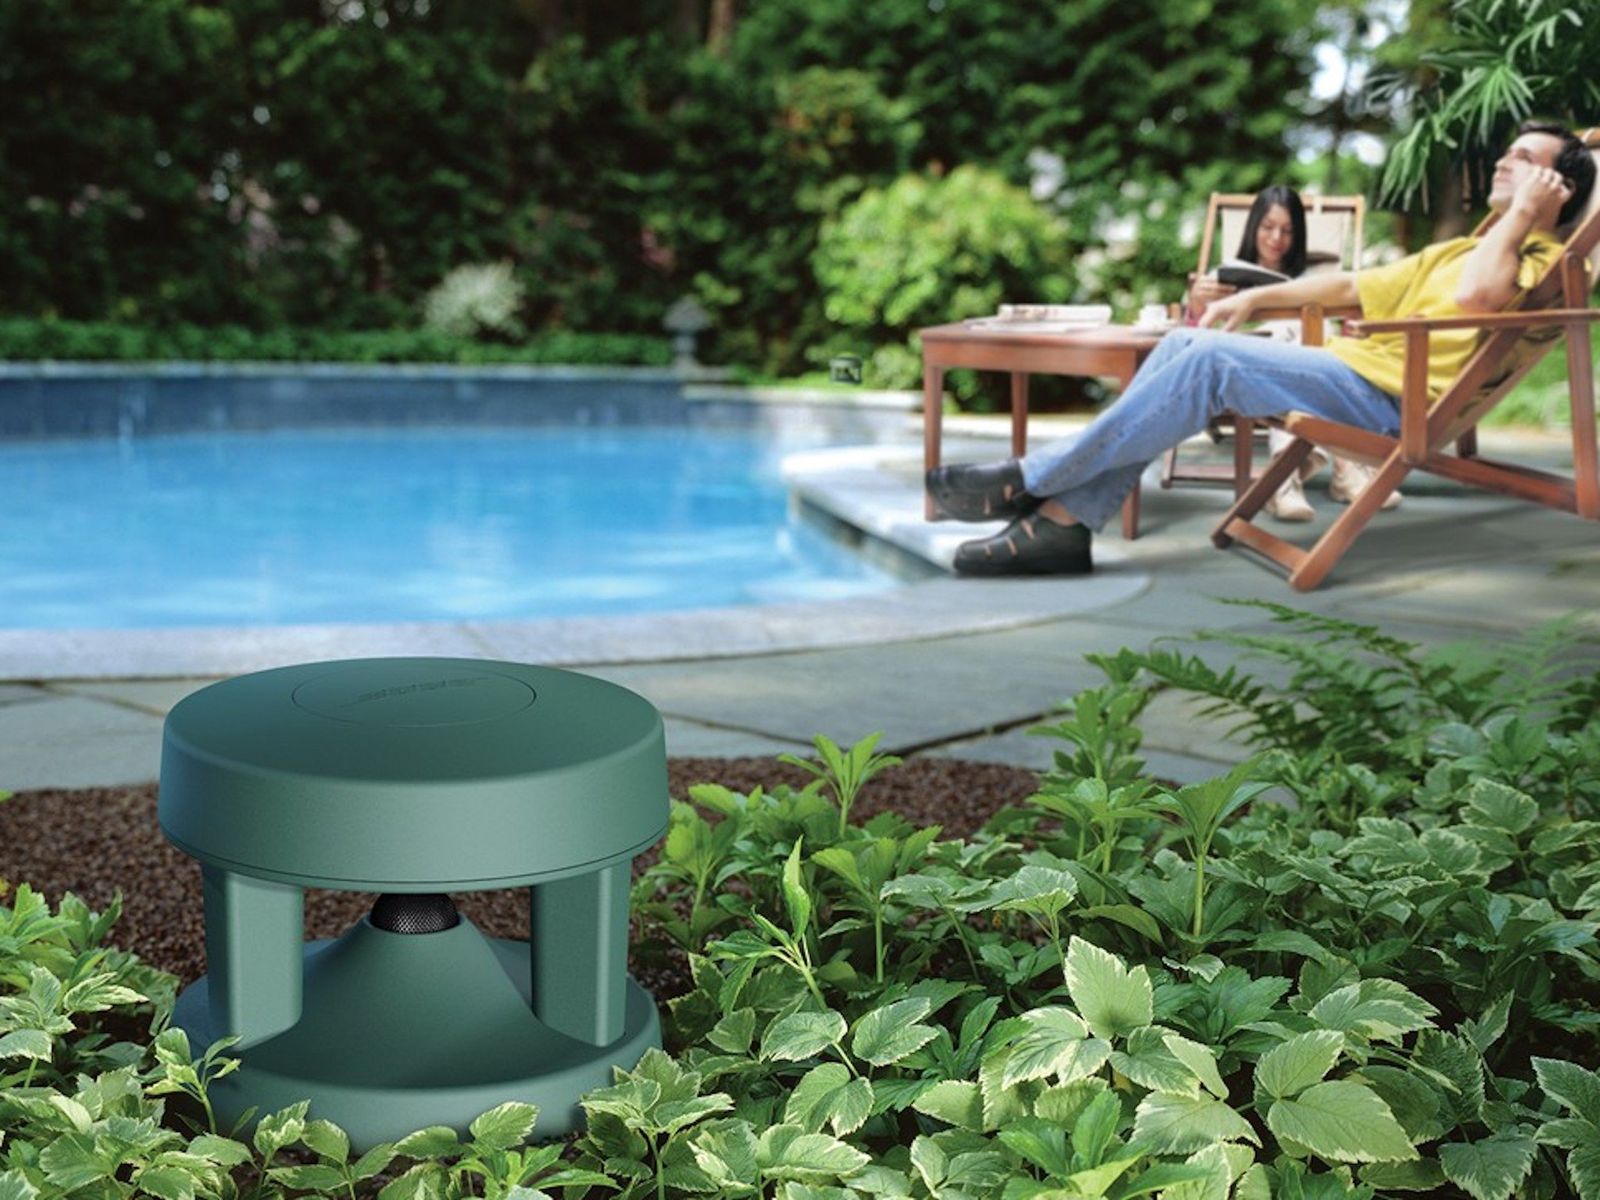 waterproof garden speakers